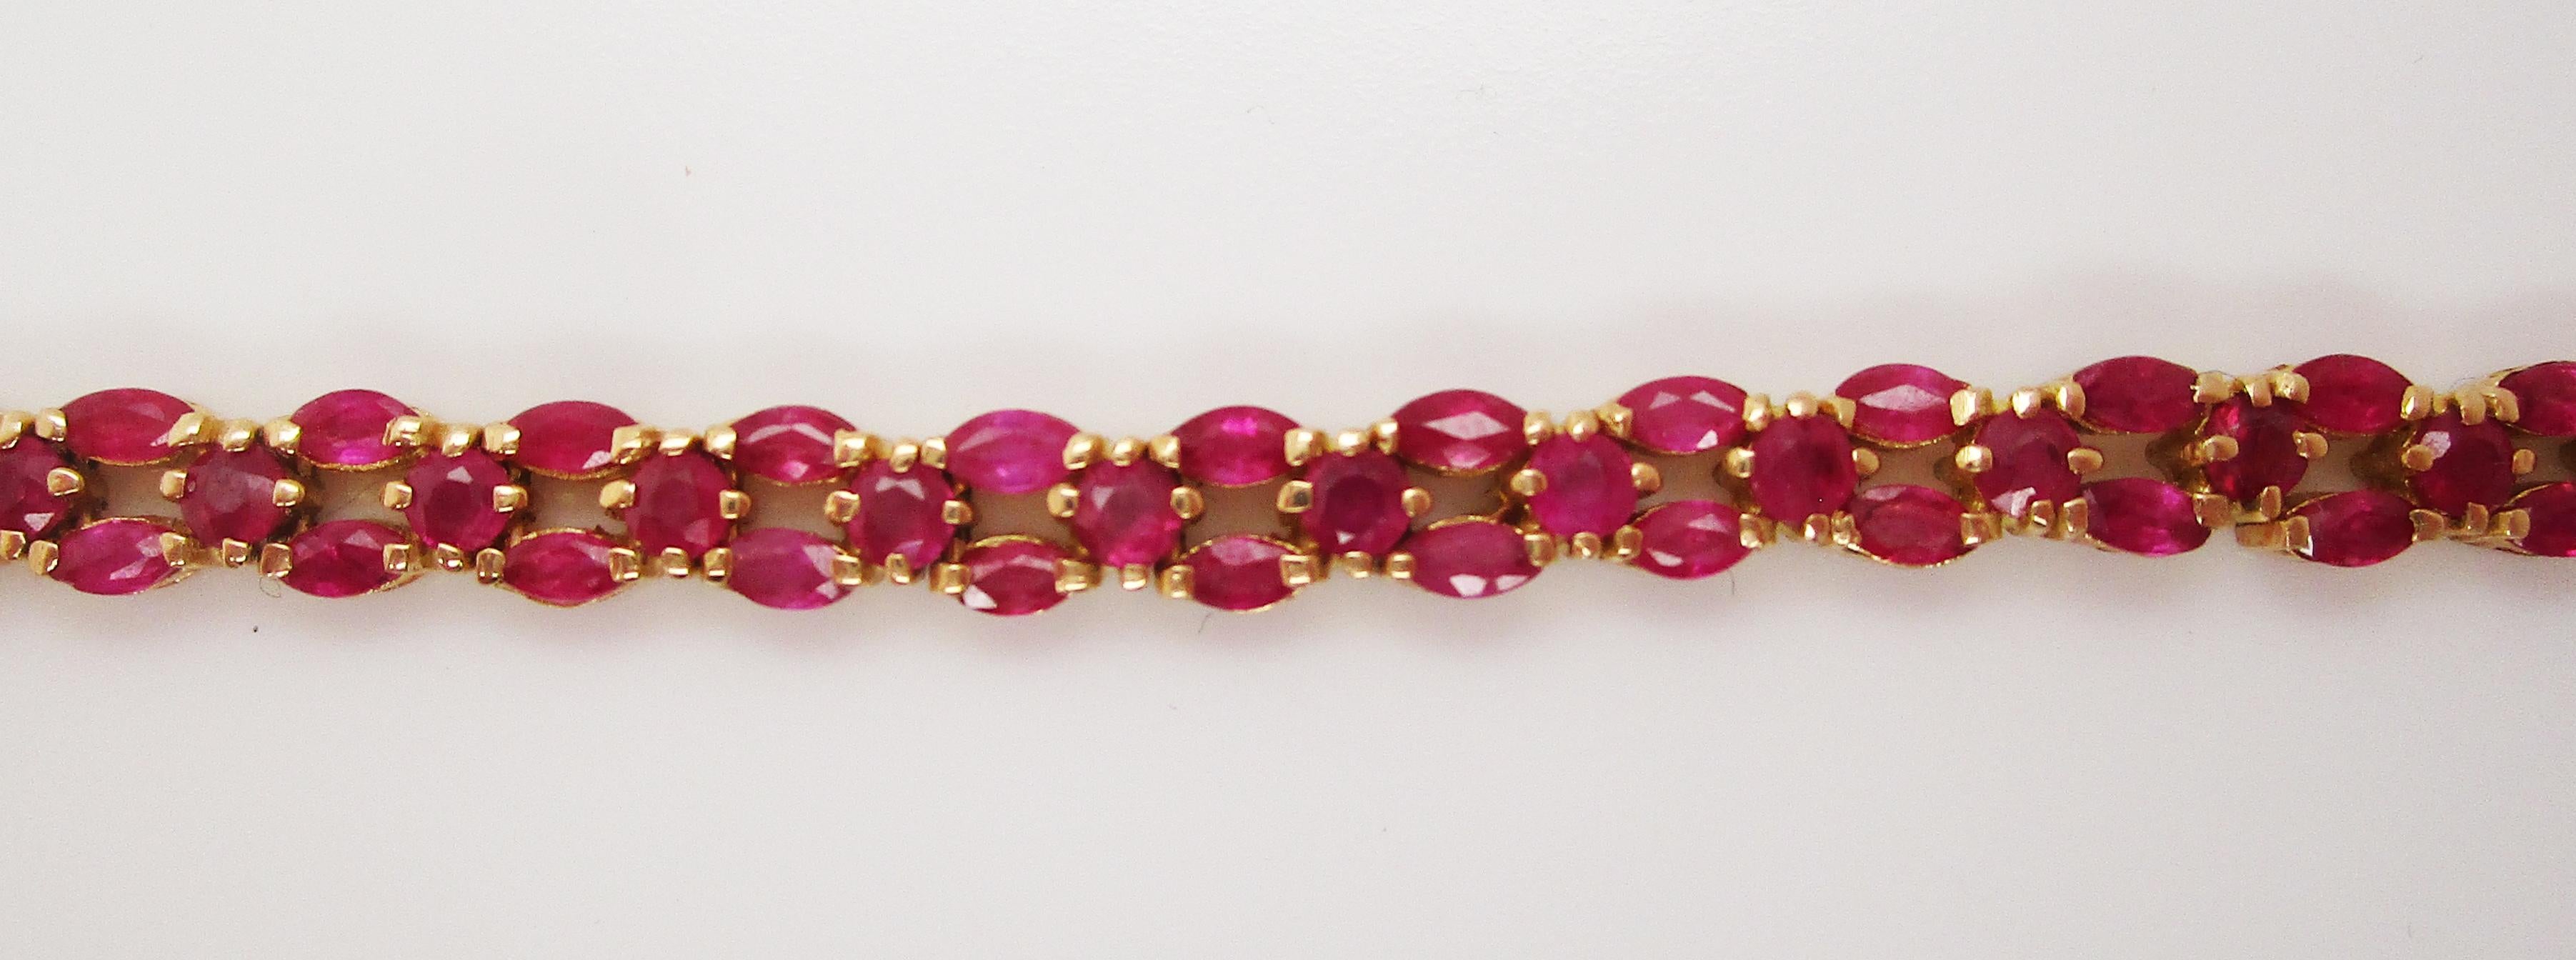 Dies ist eine wunderschöne Linie Armband in 18k Gelbgold mit fünf Karat schönen leuchtend roten Rubinen! Das Armband zeichnet sich durch eine einzigartige Anordnung von runden und marquiseförmigen Rubinen aus. Das Armband ist flexibel, bequem und